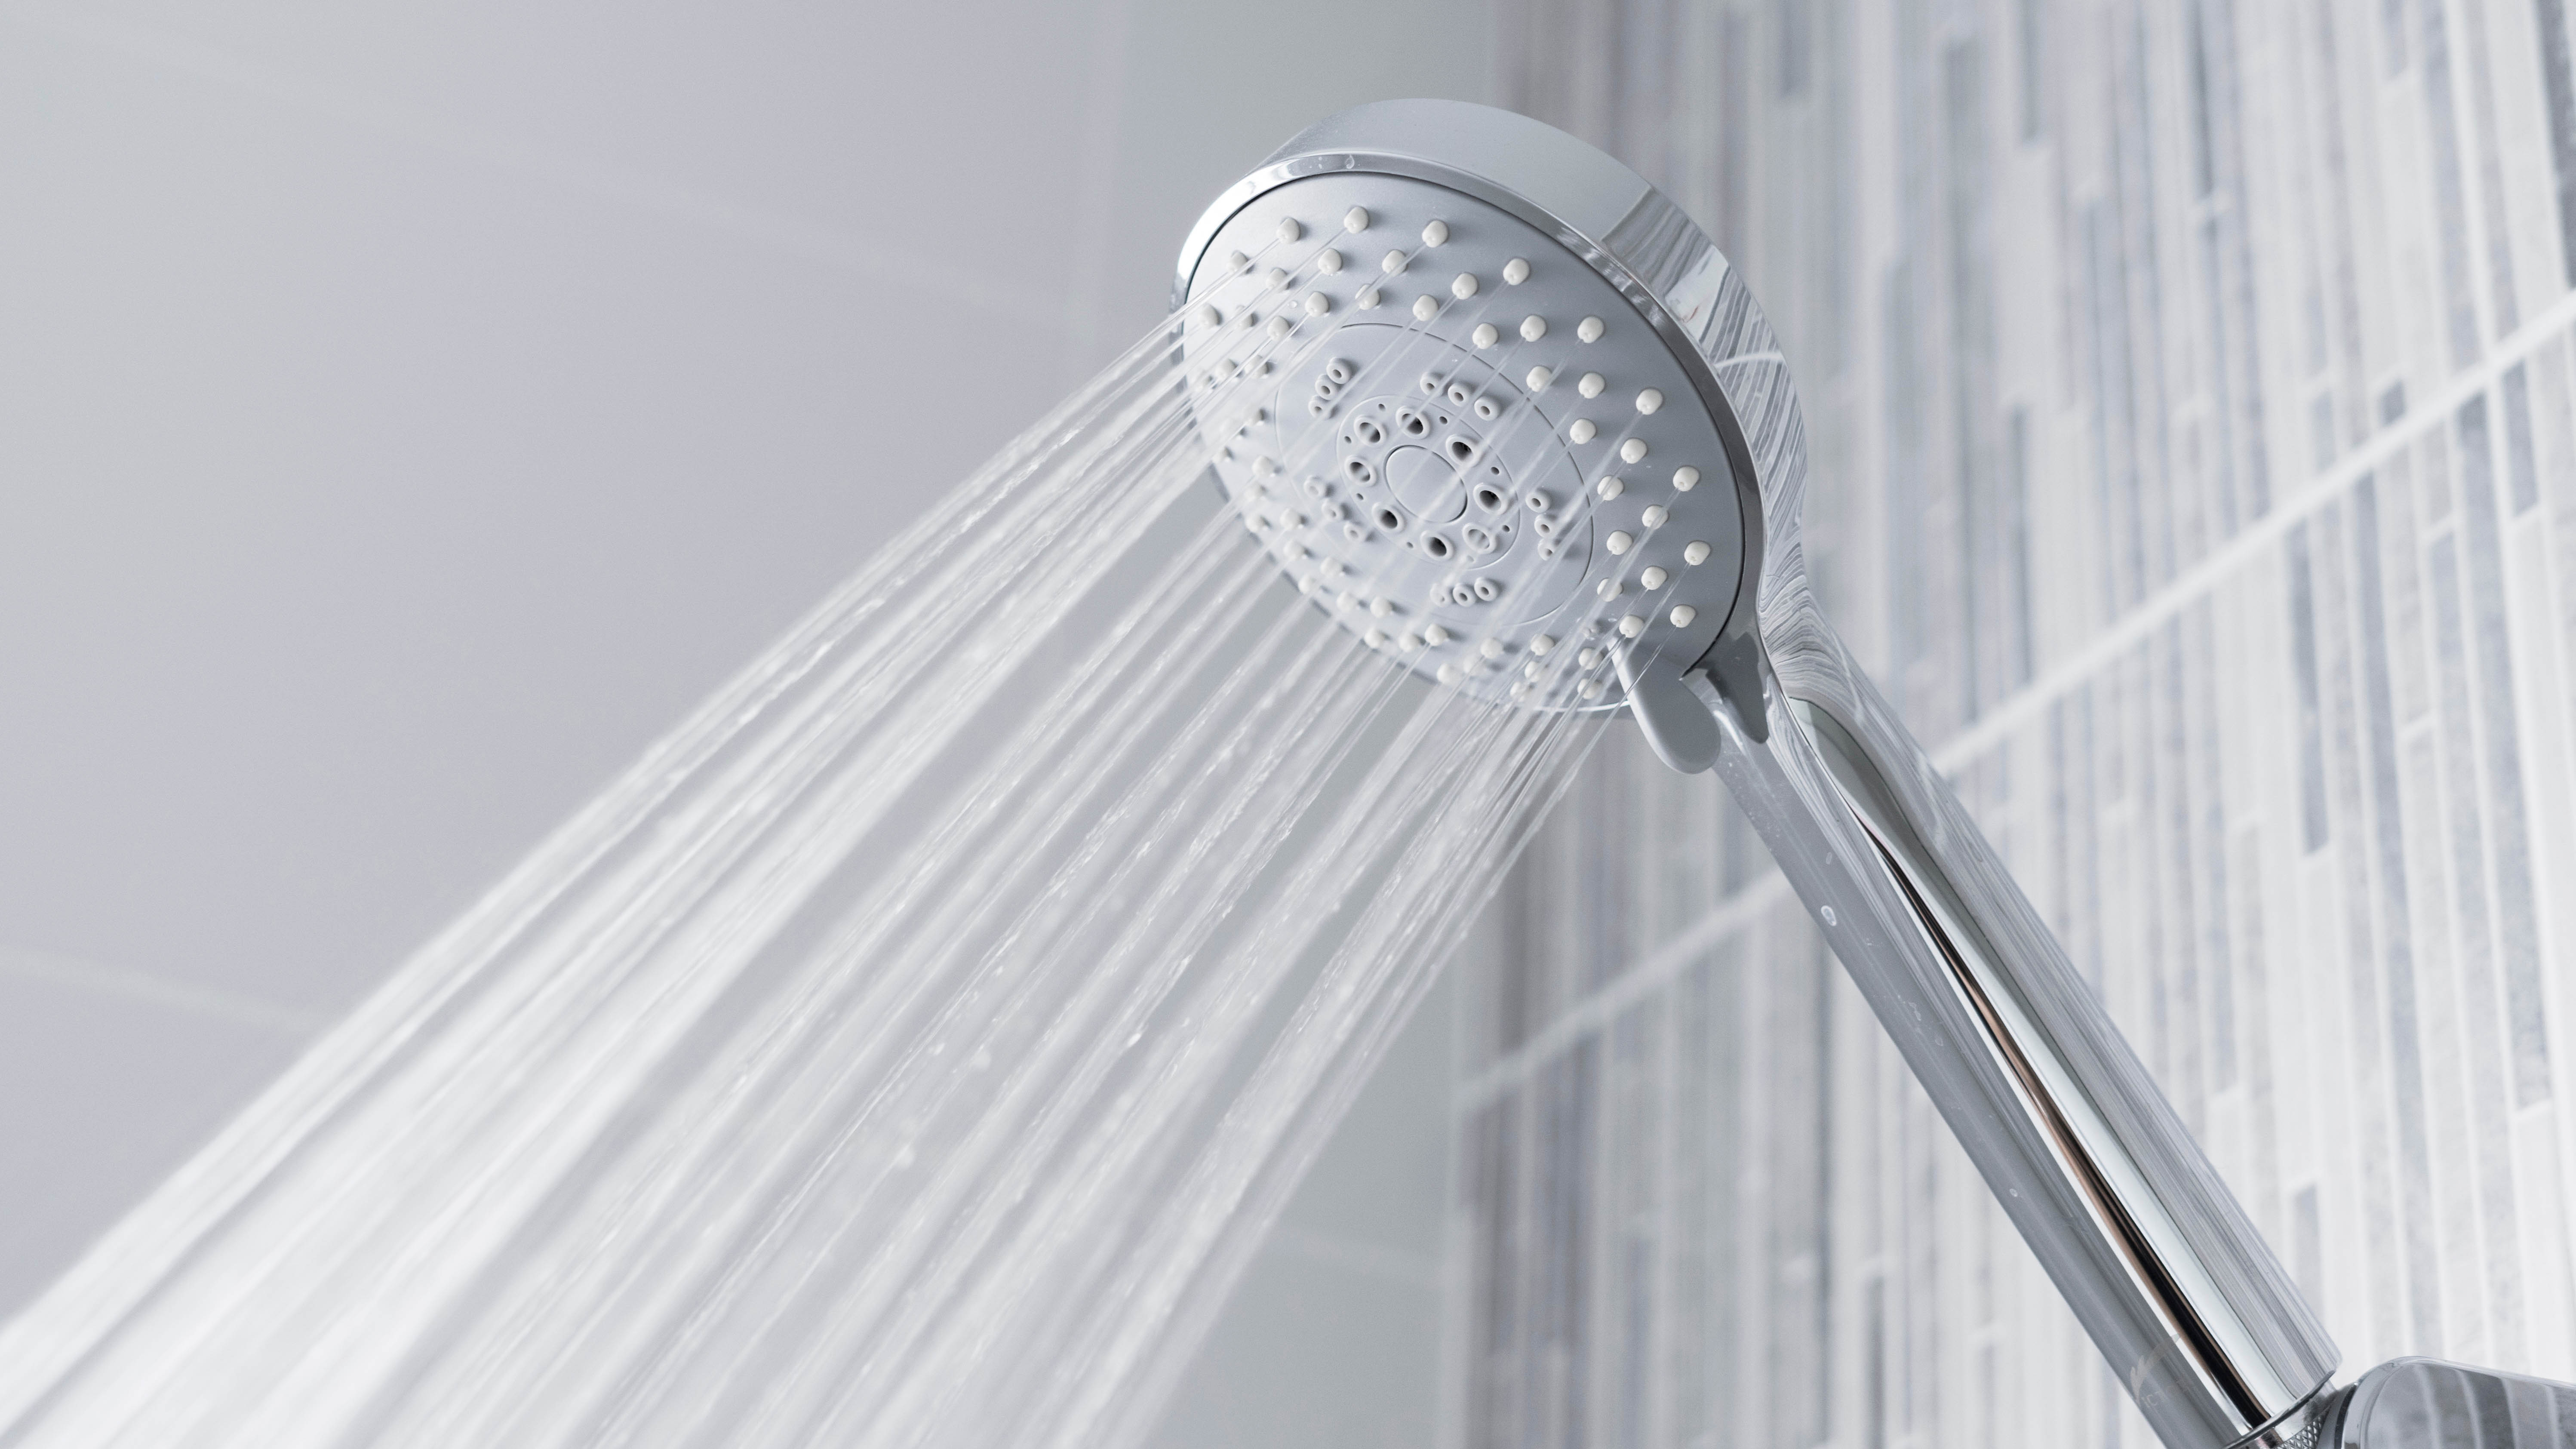 A shower head running water